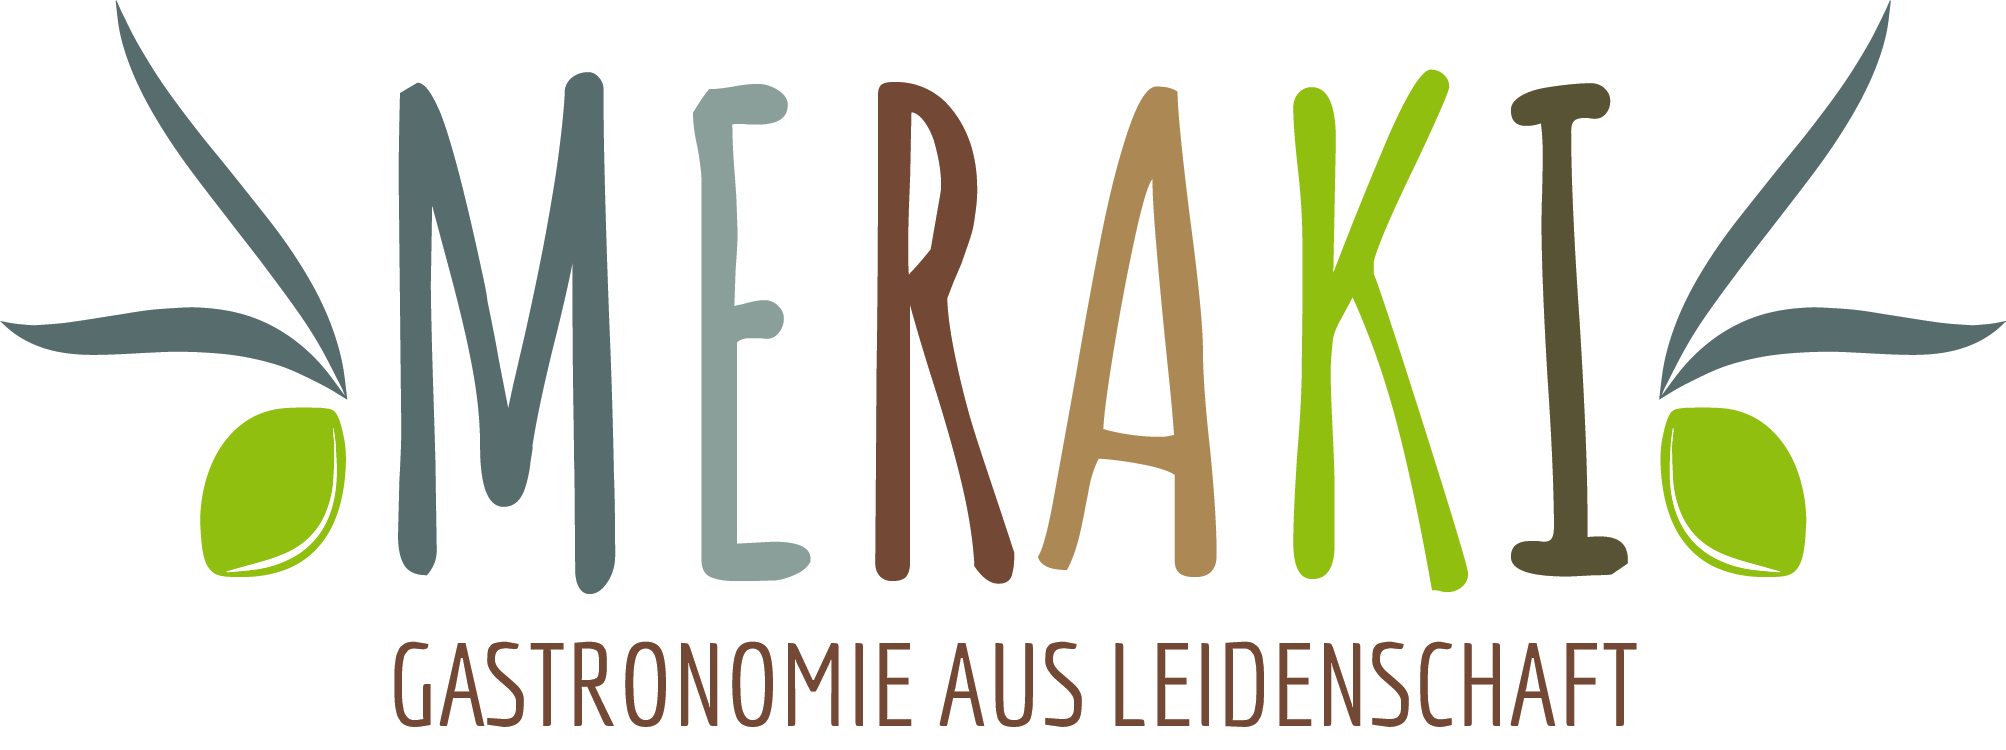 Logo of Meraki font with olives